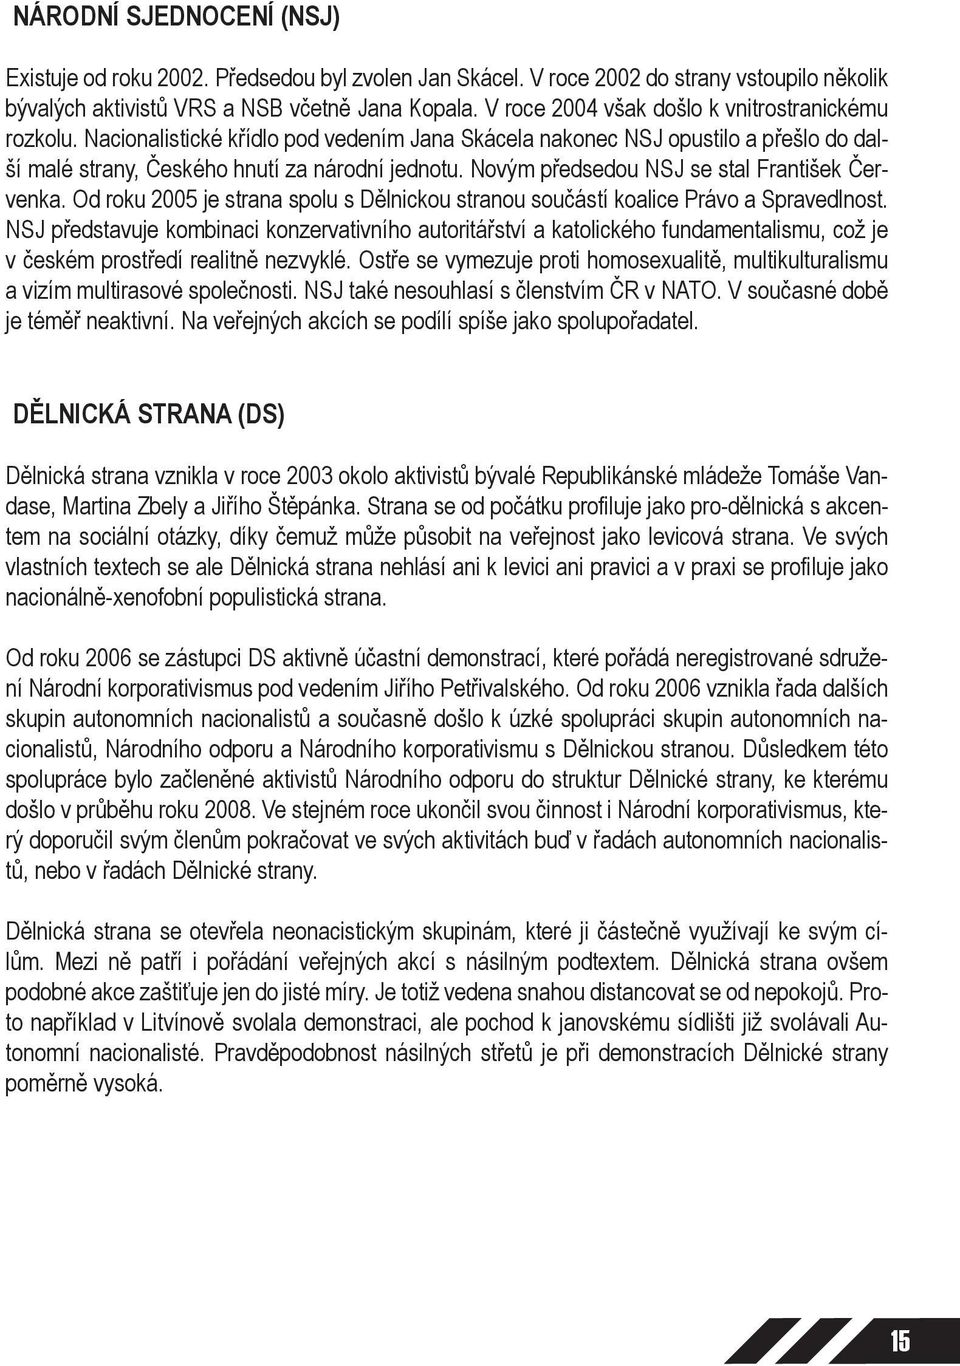 Novým předsedou NSJ se stal František Červenka. Od roku 2005 je strana spolu s Dělnickou stranou součástí koalice Právo a Spravedlnost.